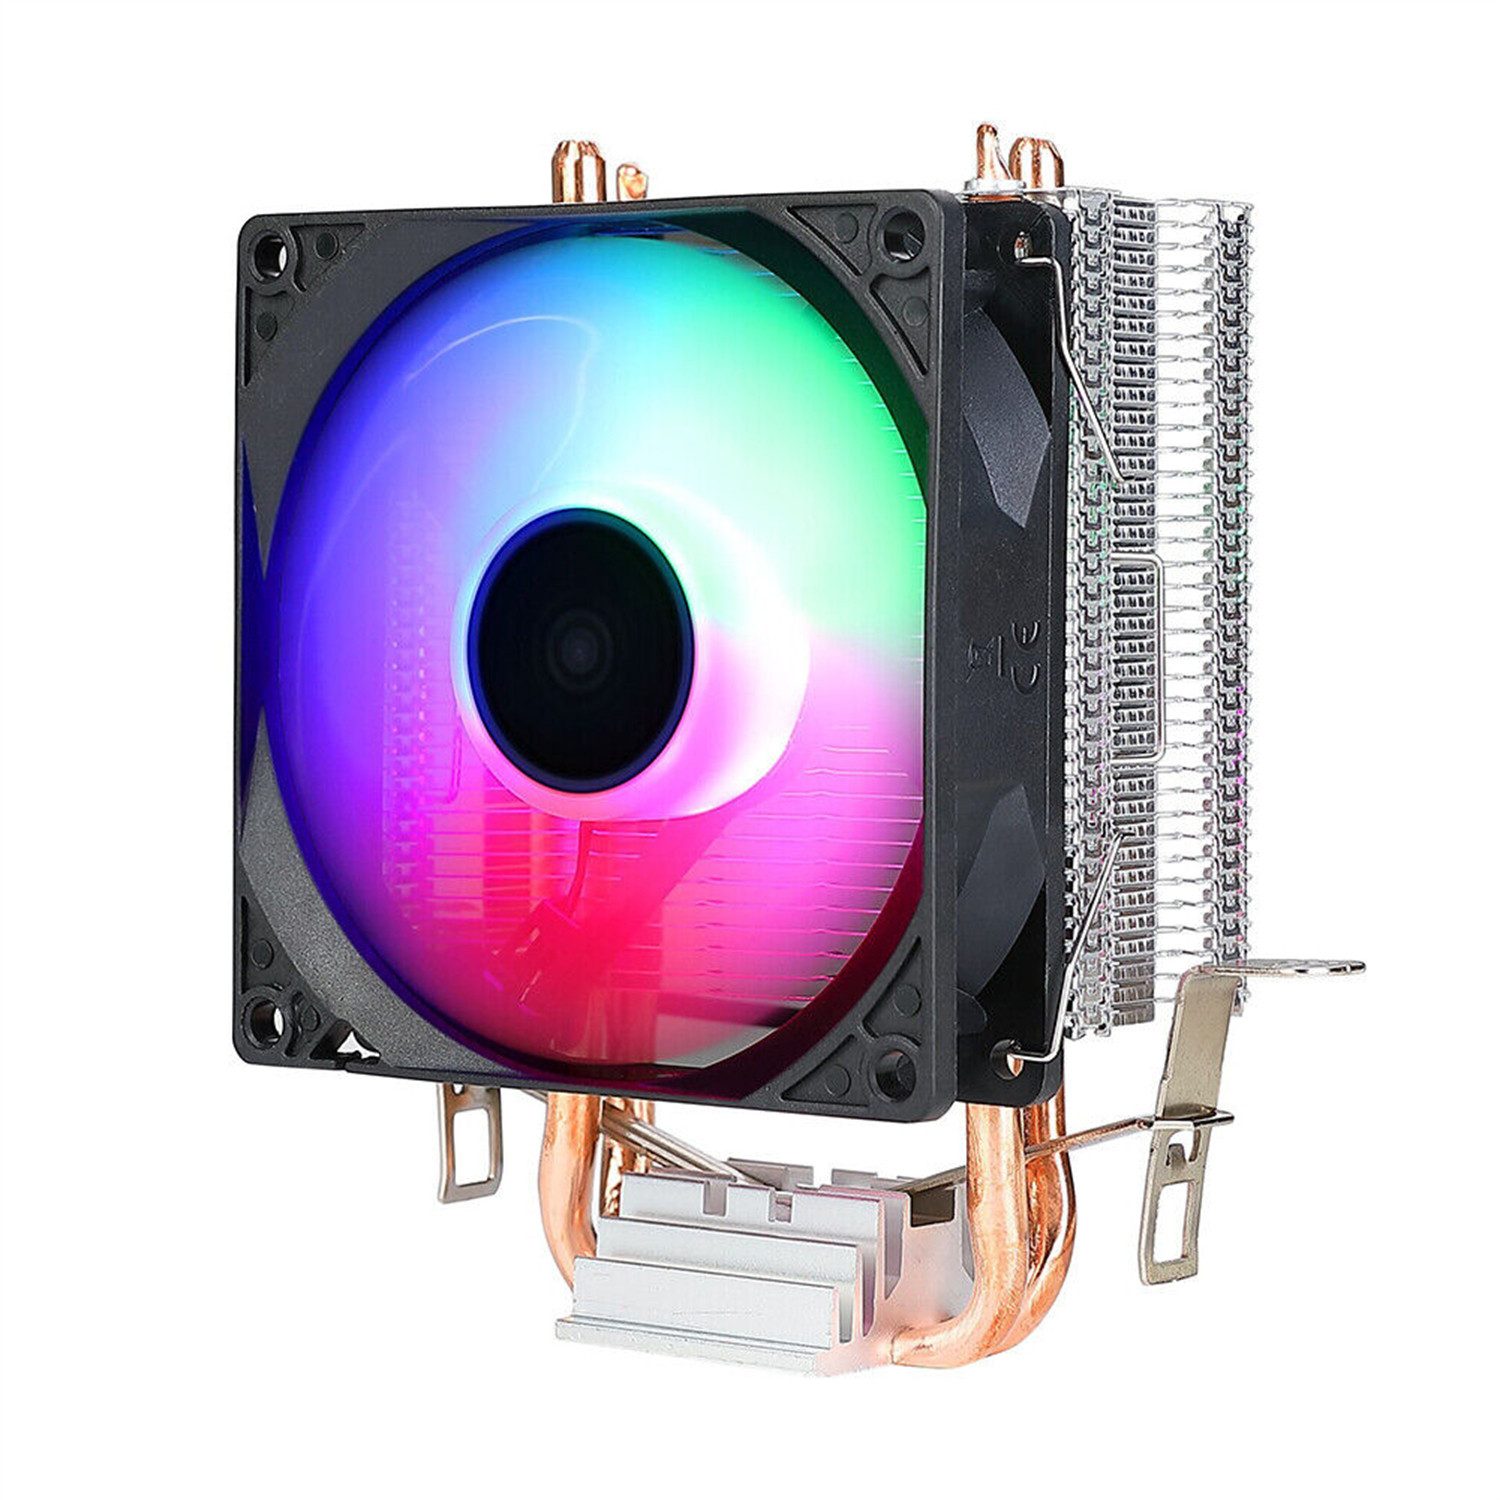 yozhiqu CPU Kühler Doppelrohr CPU-Kühler, passend für 1151/2011/1155 AMD Desktop CPUs, leuchtender Lüfter, Bunte Lichteffekt gepaart mit Ausrüstung mehr bunt